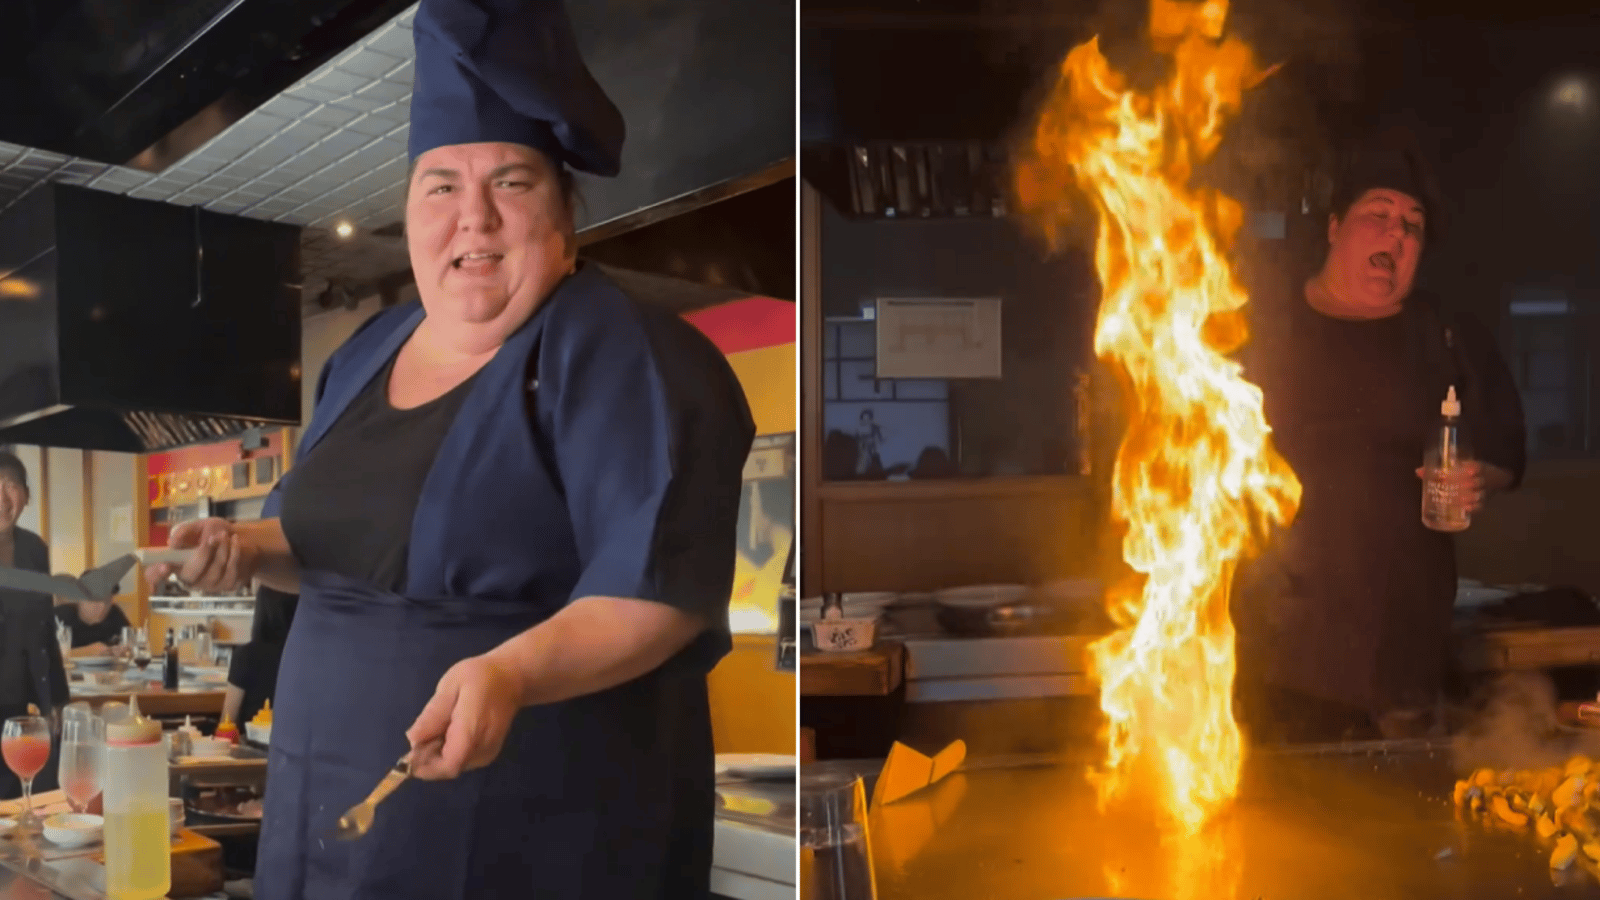 Christine Morency réalise un rêve dans une vidéo hilarante et devient chef hibachi pour sa fête